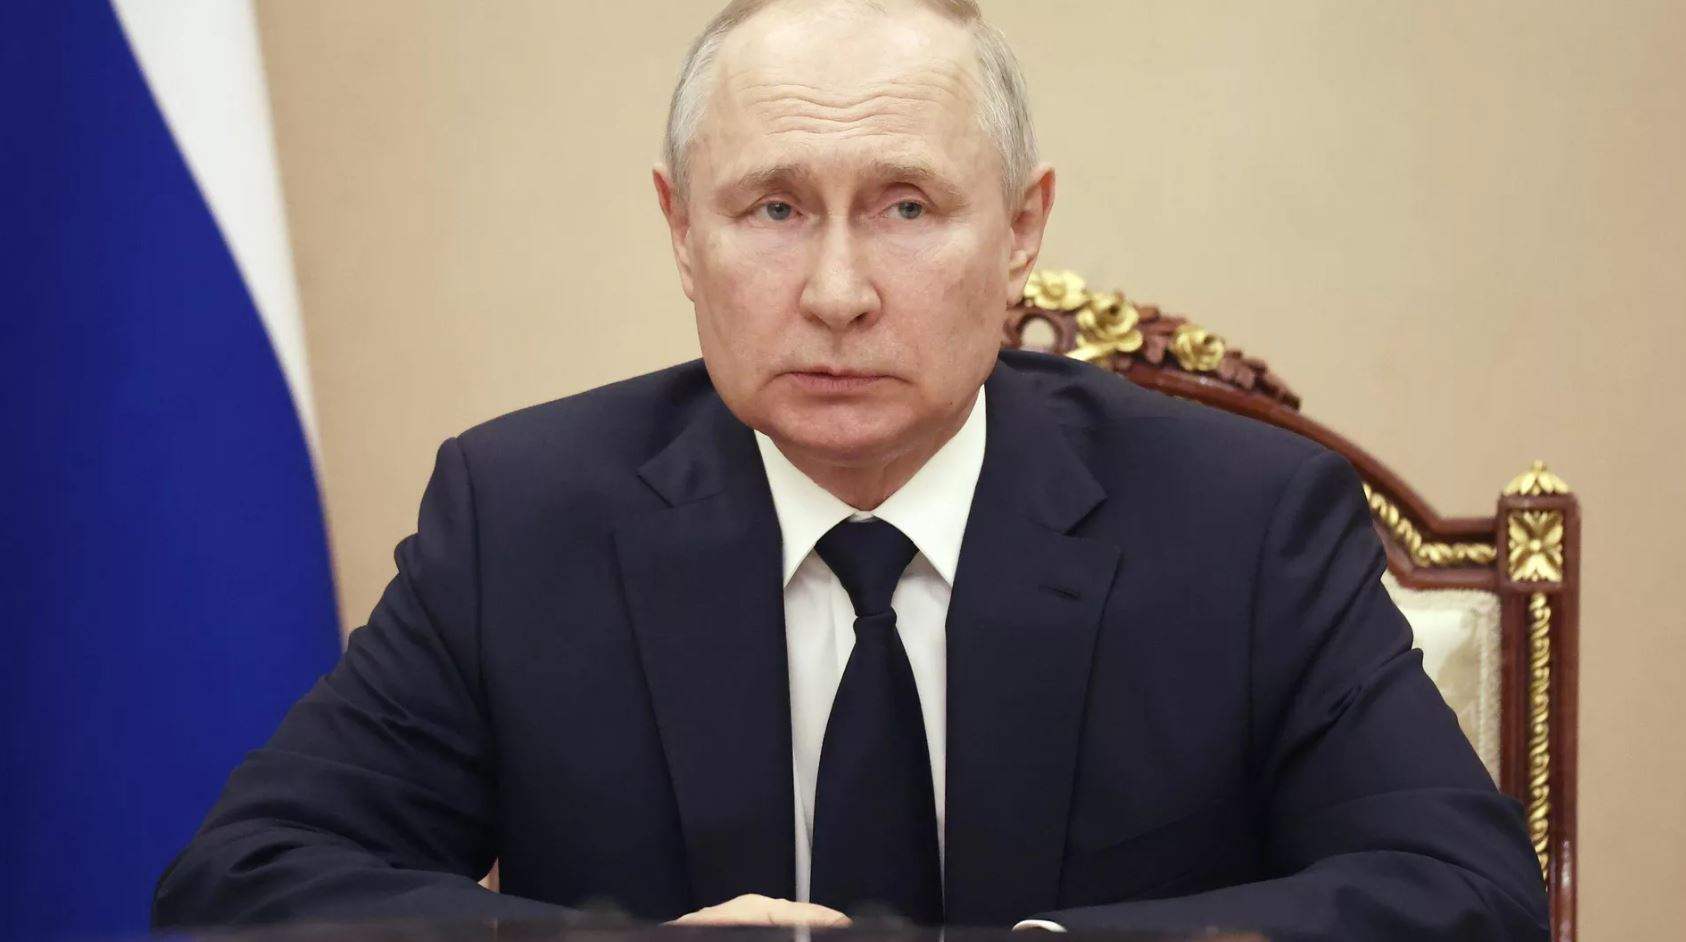 بوتين يوقع على قانون حول سحب روسيا لتصديقها على معاهدة حظر التجارب النووية